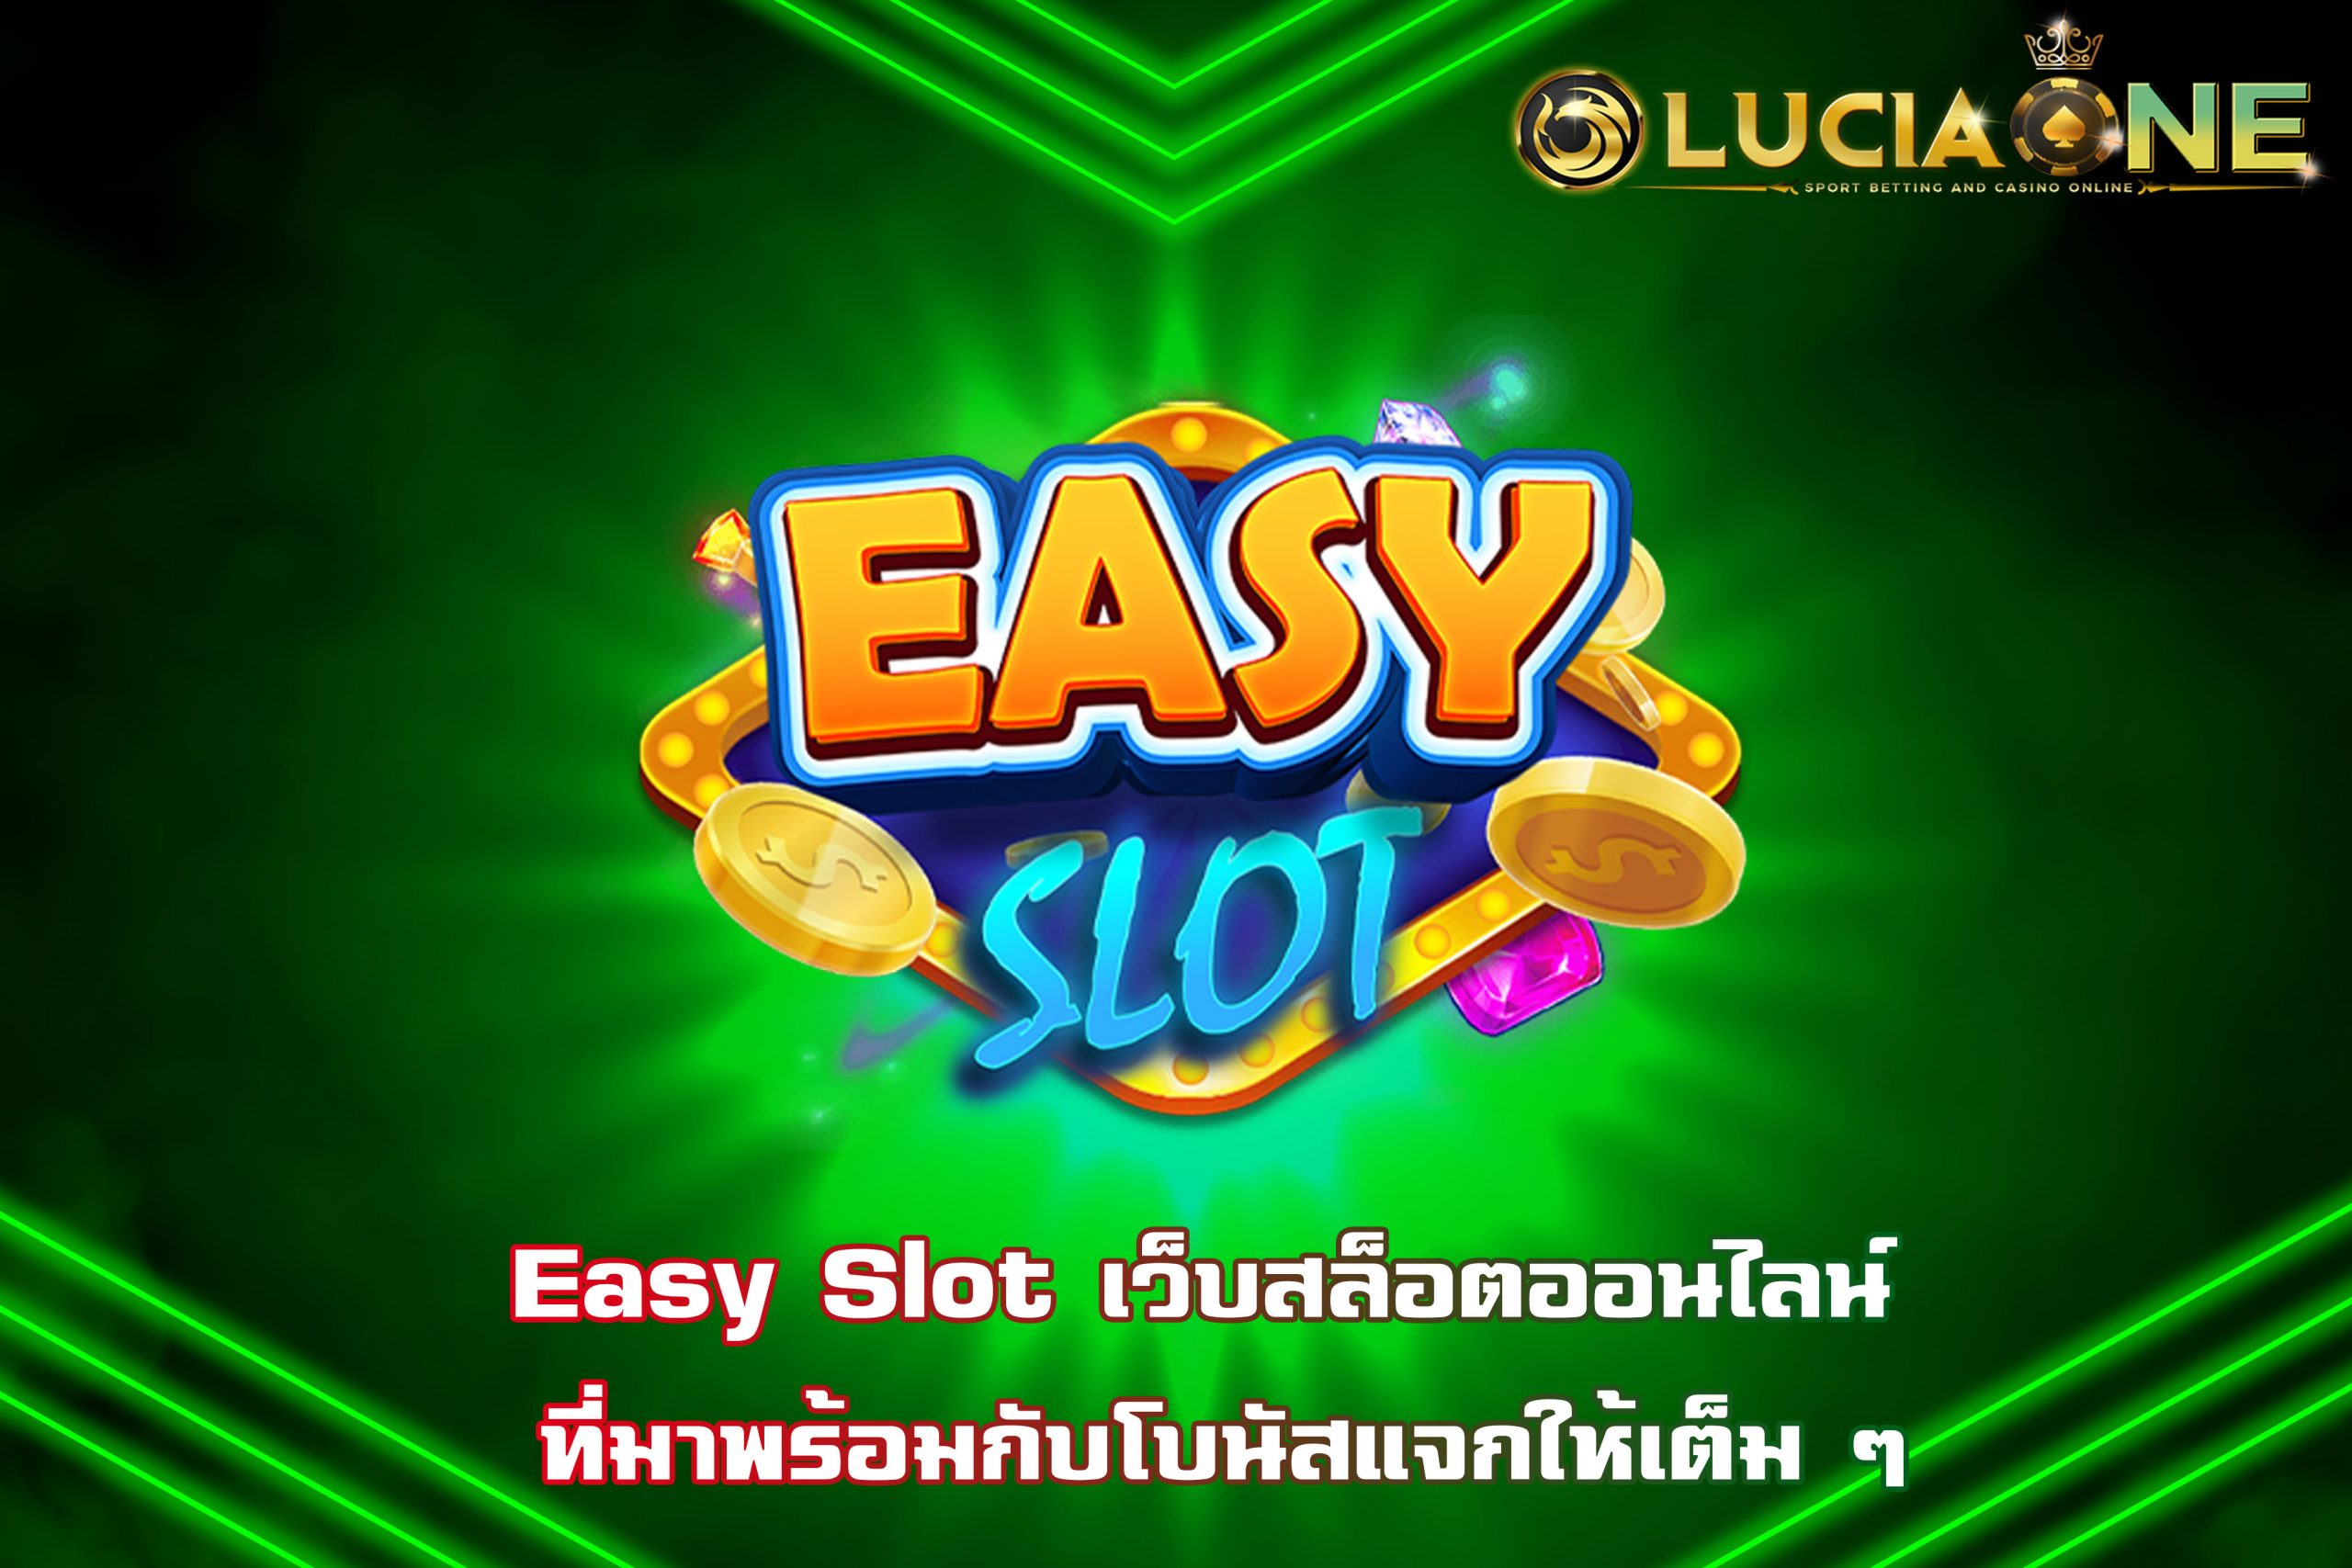 Easy Slot เว็บสล็อตออนไลน์ ที่มาพร้อมกับโบนัสแจกให้เต็ม ๆ